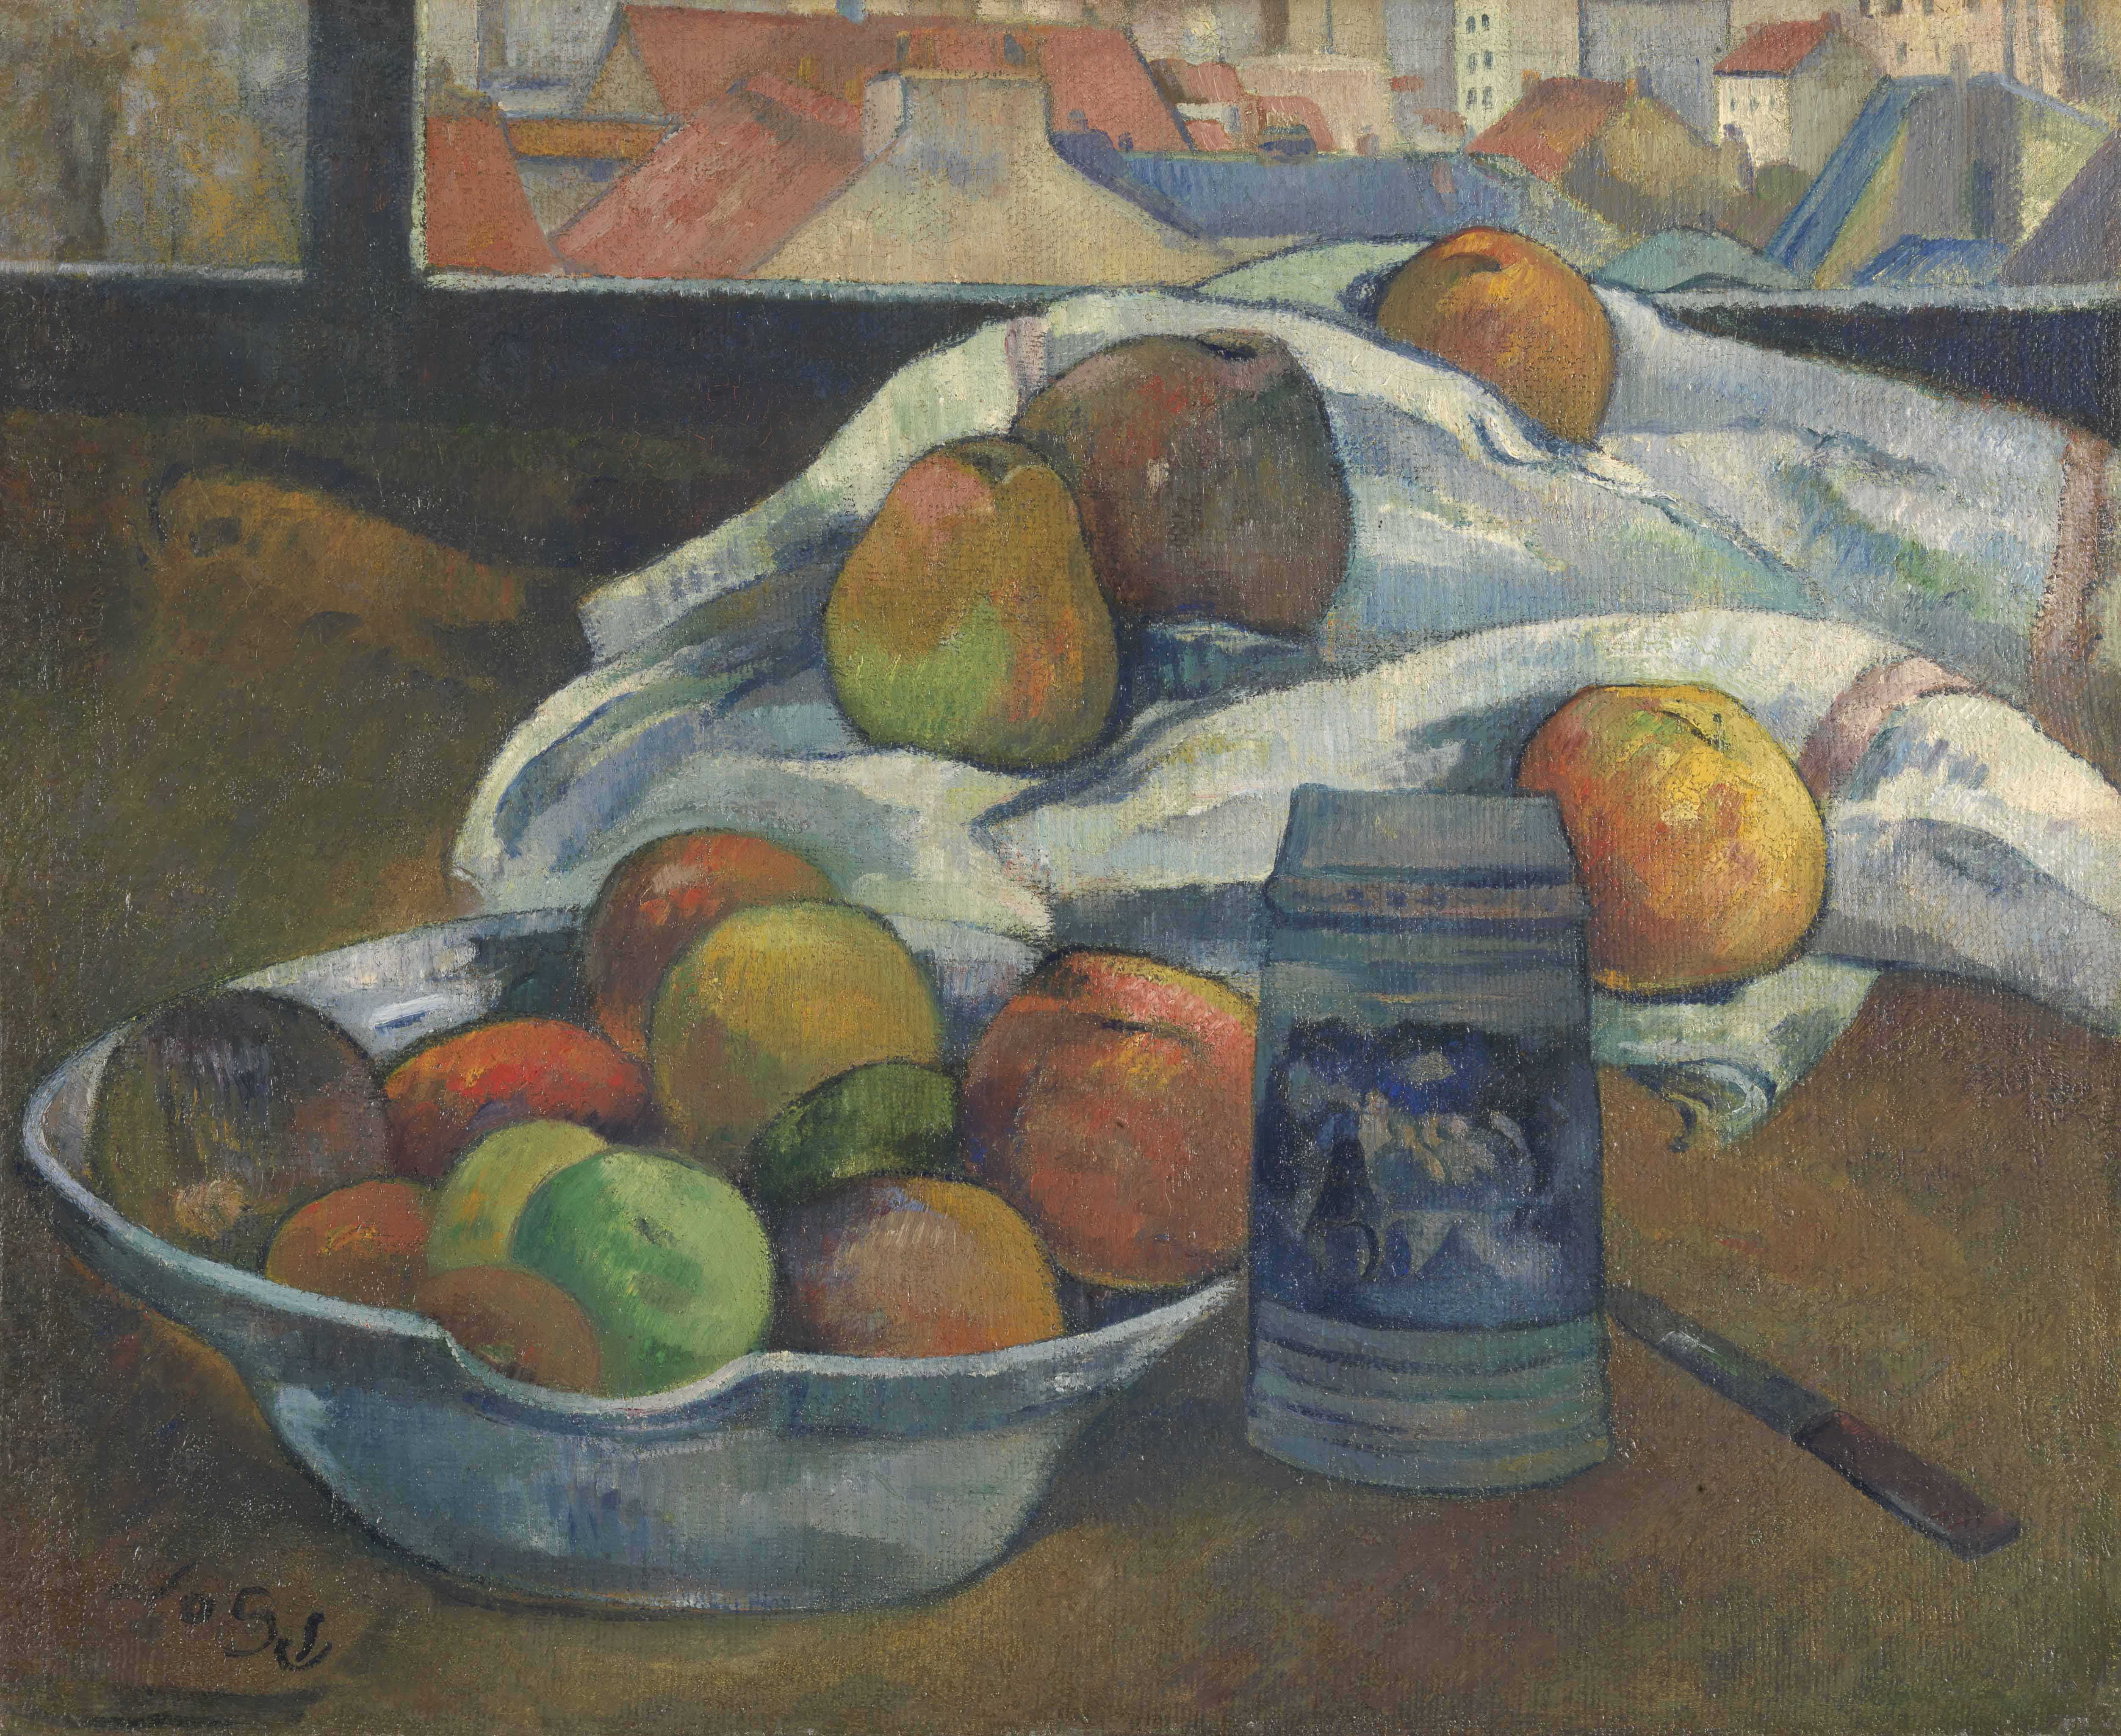 保 羅 ． 高 更 （ 1 8 4 8 - 1 9 0 3 ） 作 品 〈 窗 前 的 果 盆 和 啤 酒 杯 〉 ， 約 1 8 9 0 年 創 作 。 圖 片 版 權 ： 英 國 國 家 藝 廊 